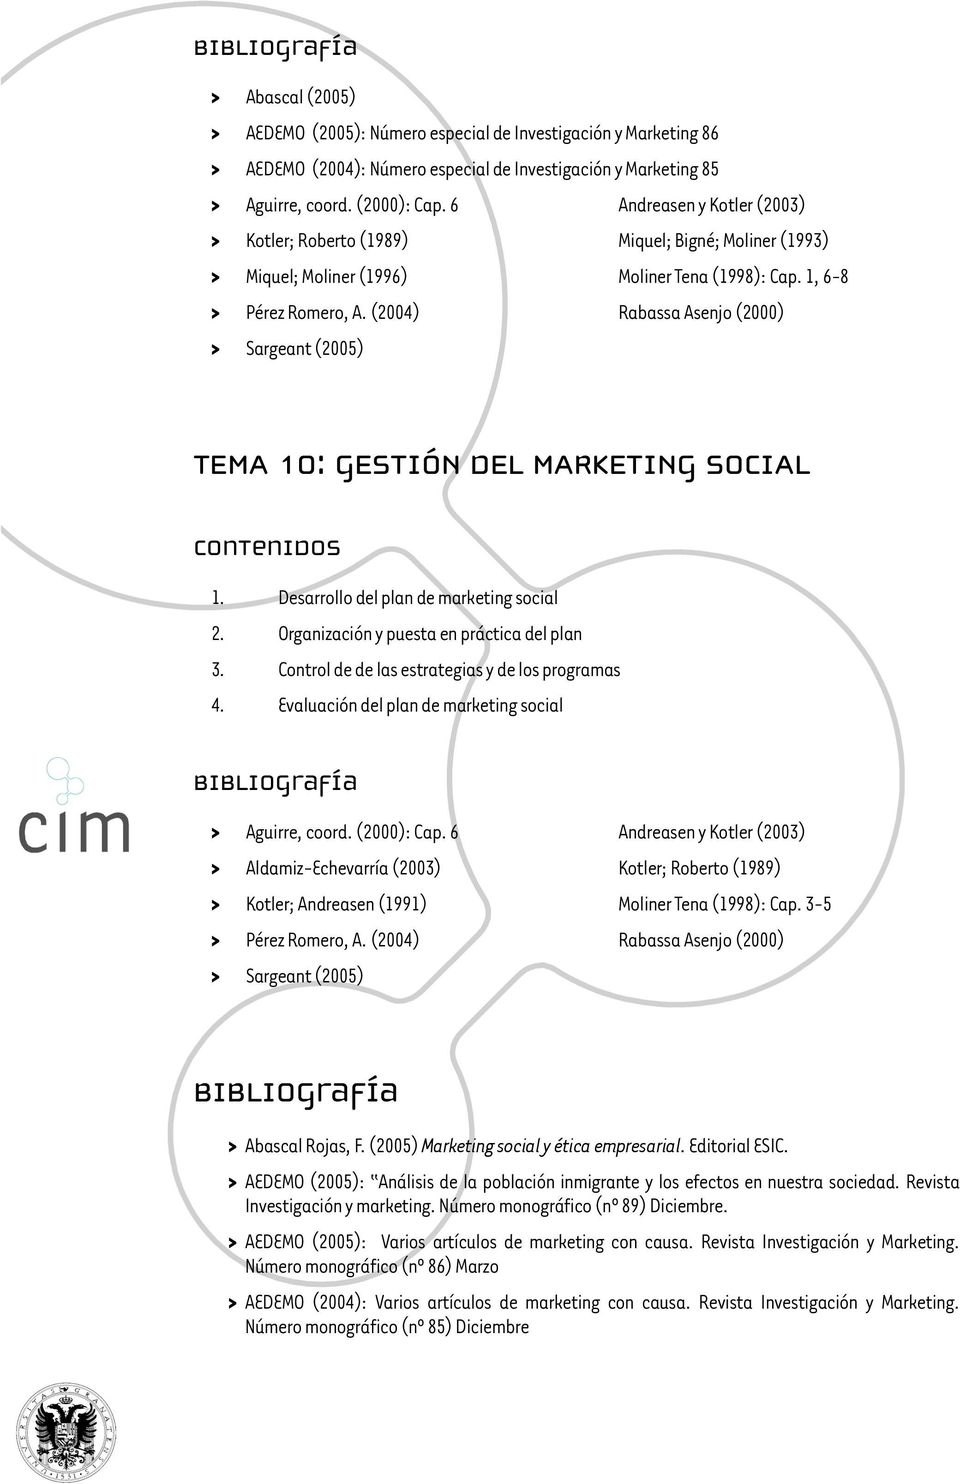 (2004) Rabassa Asenjo (2000) > Sargeant (2005) TEMA 10: GESTIÓN DEL MARKETING SOCIAL 1. Desarrollo del plan de marketing social 2. Organización y puesta en práctica del plan 3.